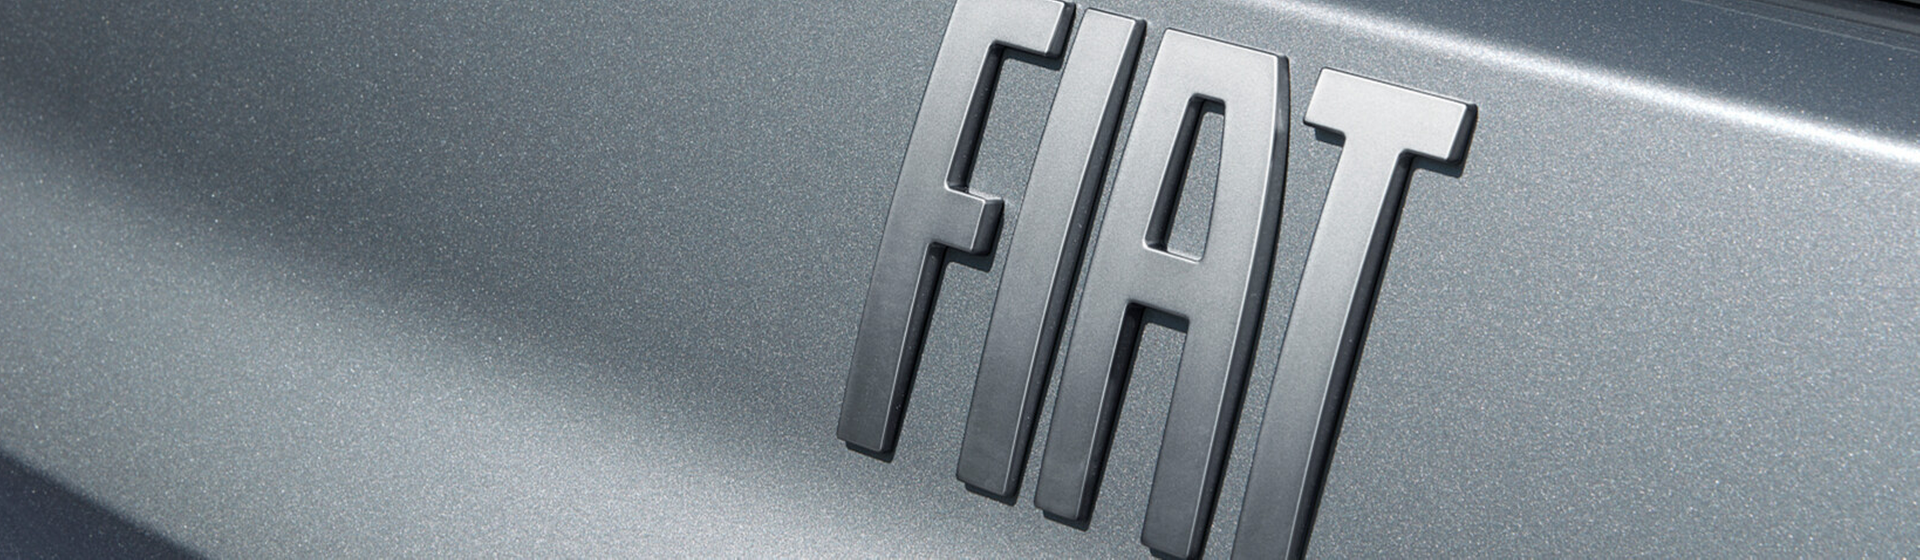 Logo sur Fiat grise